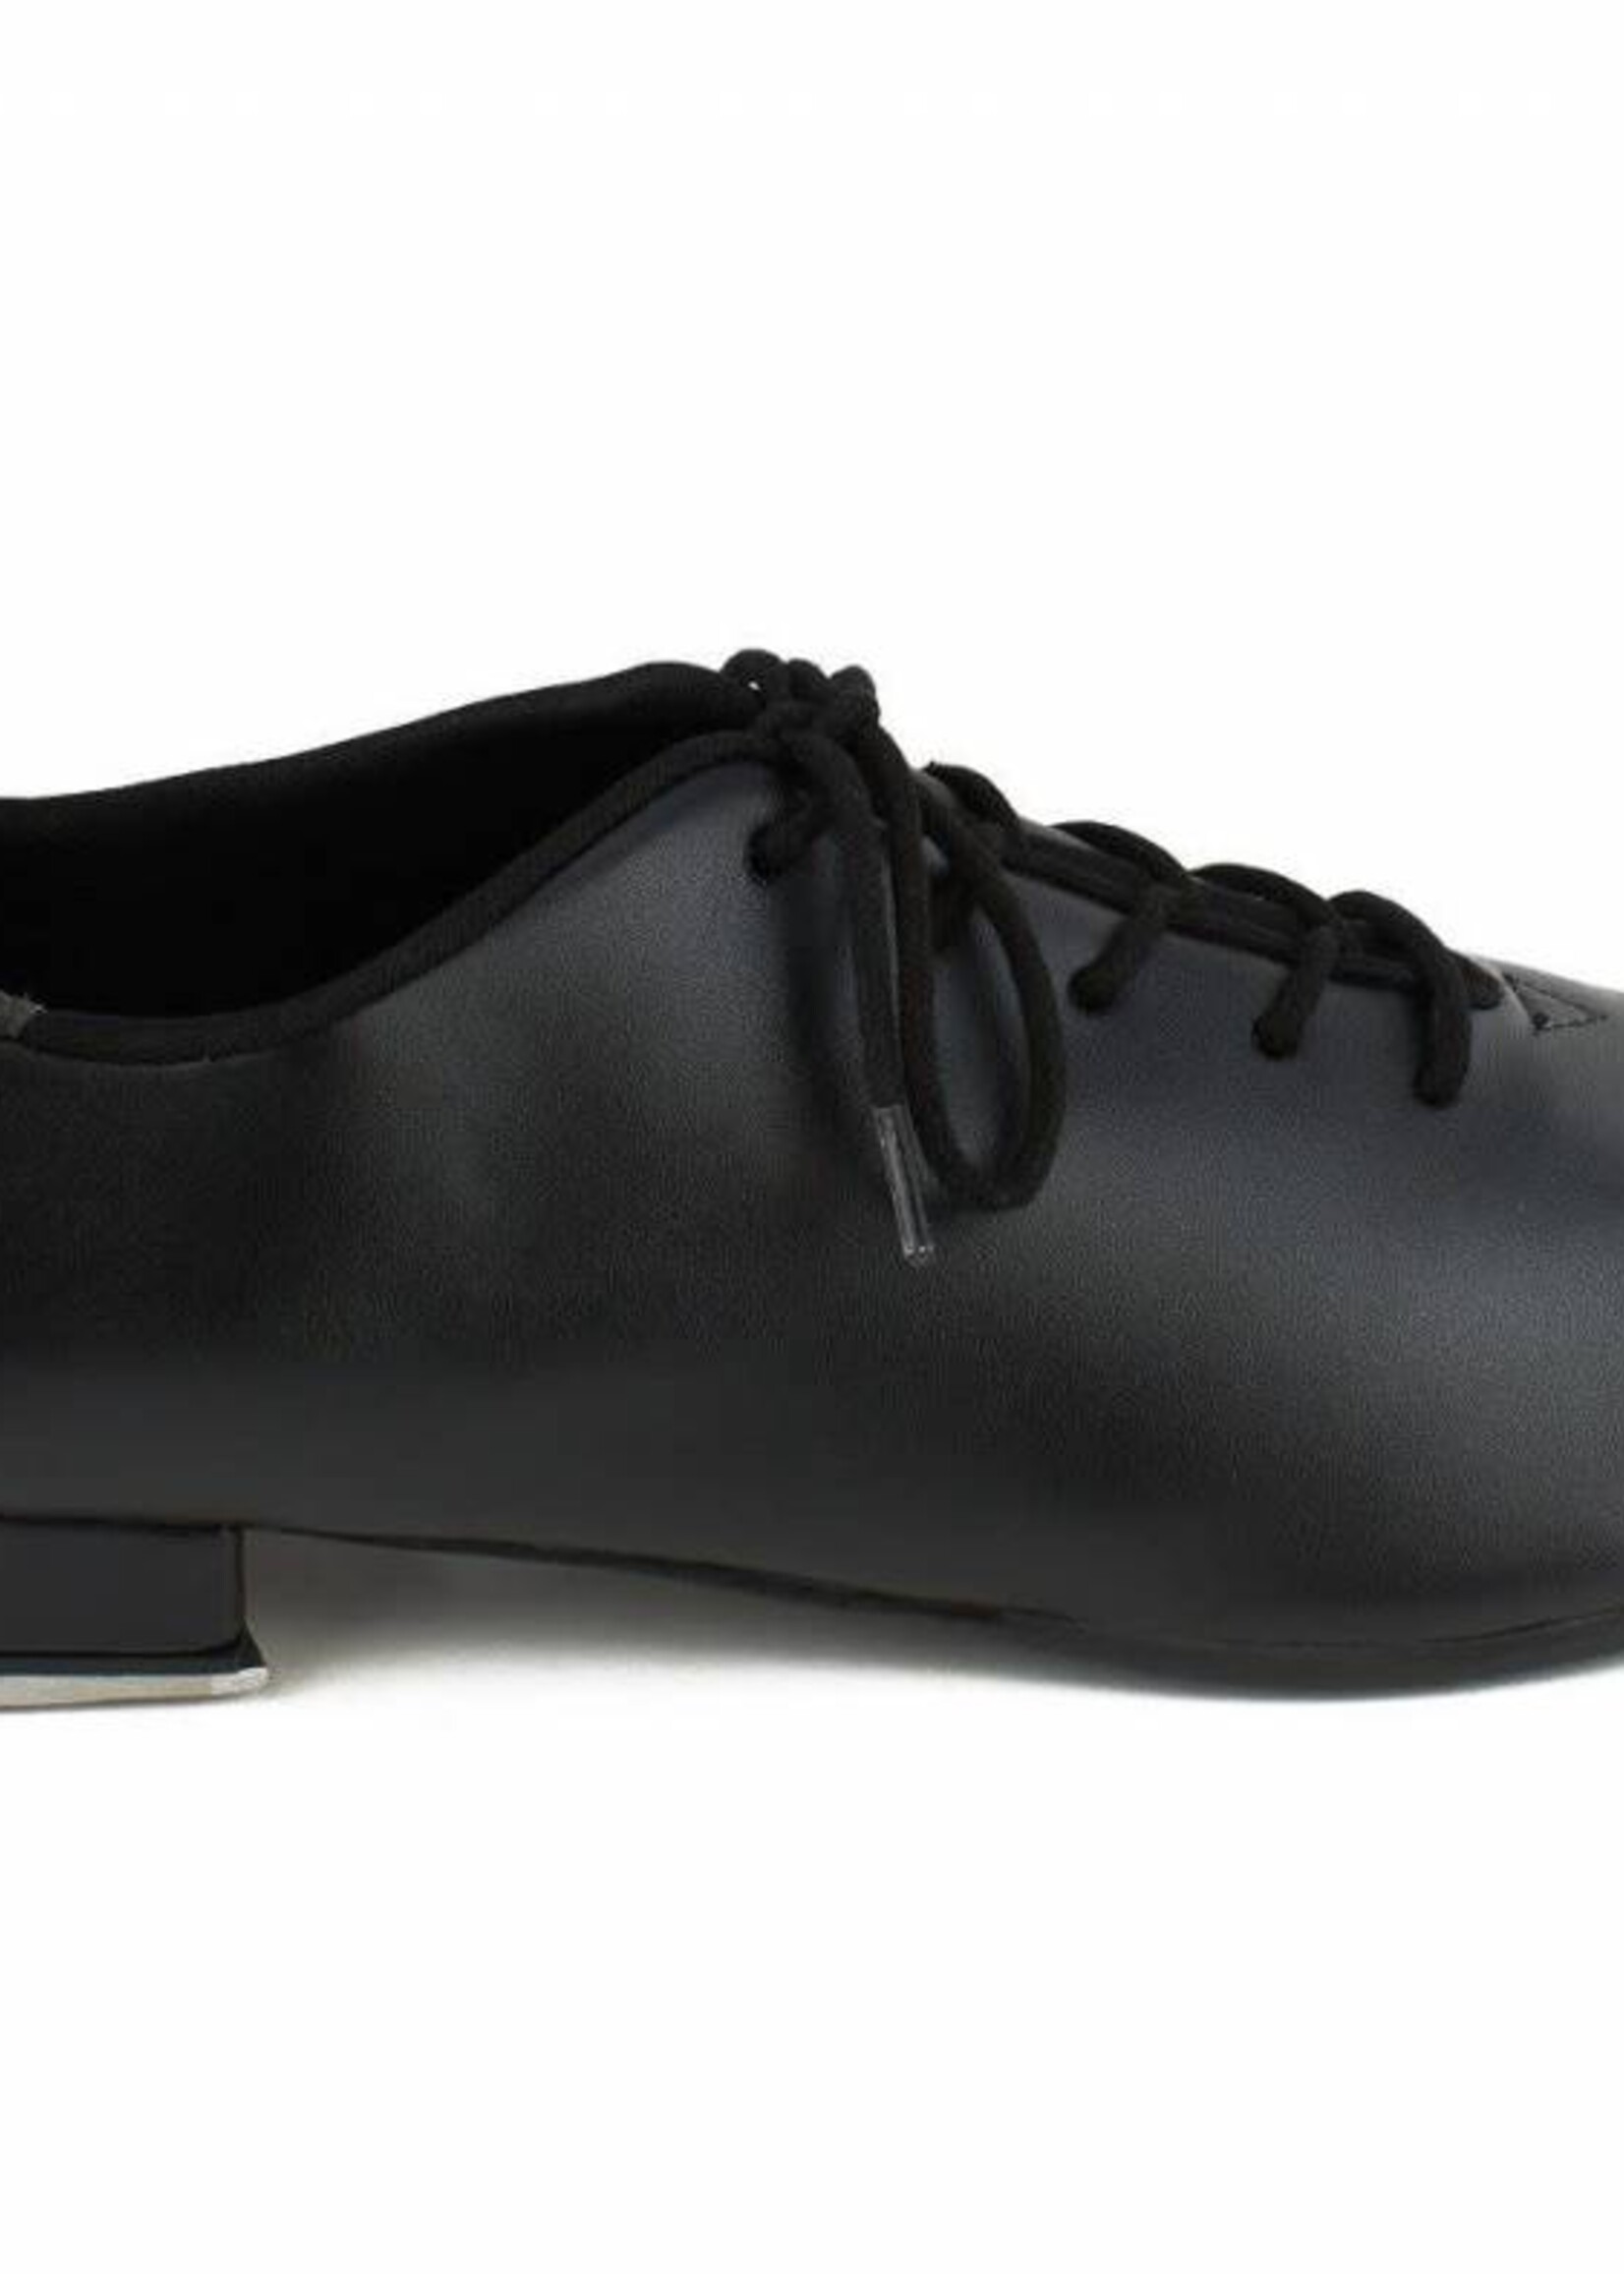 SoDanća TA05 ADULT OXFORD (LACE) Tap Shoes BLACK